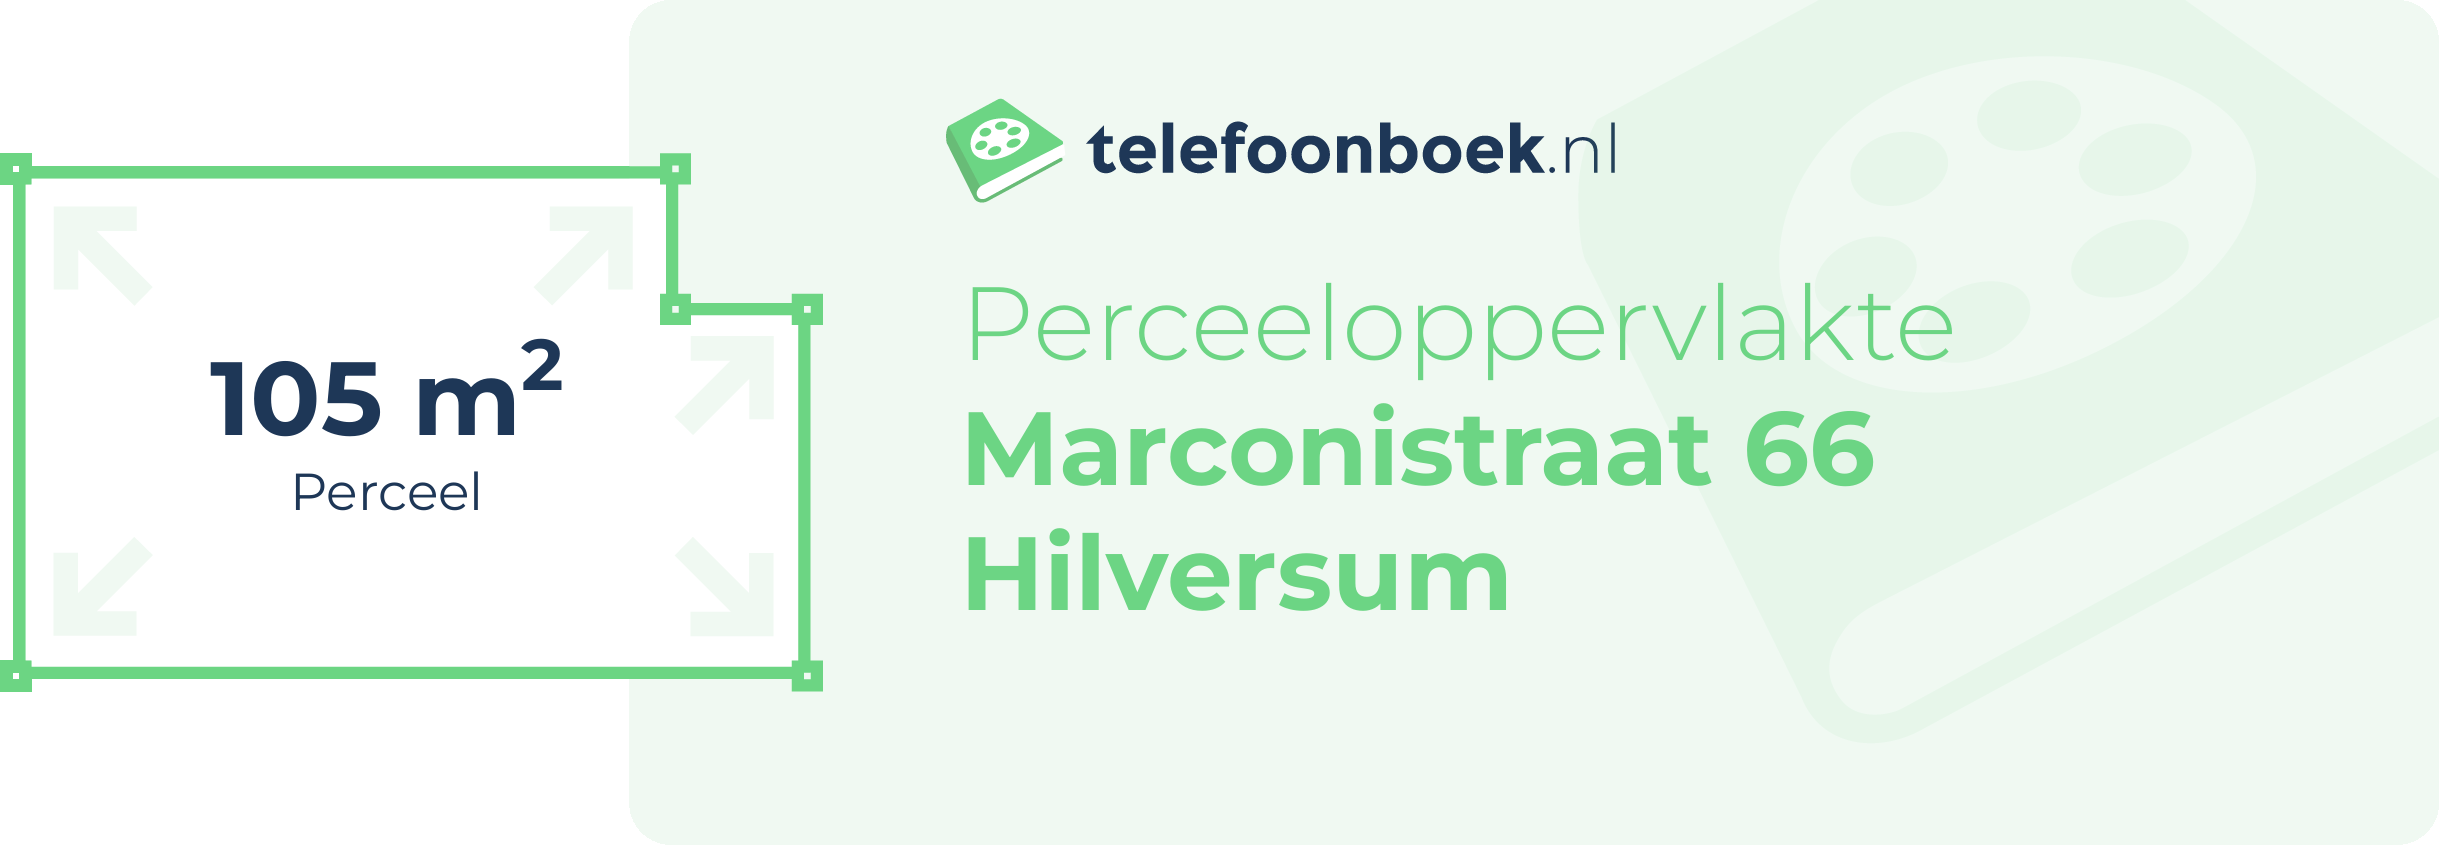 Perceeloppervlakte Marconistraat 66 Hilversum